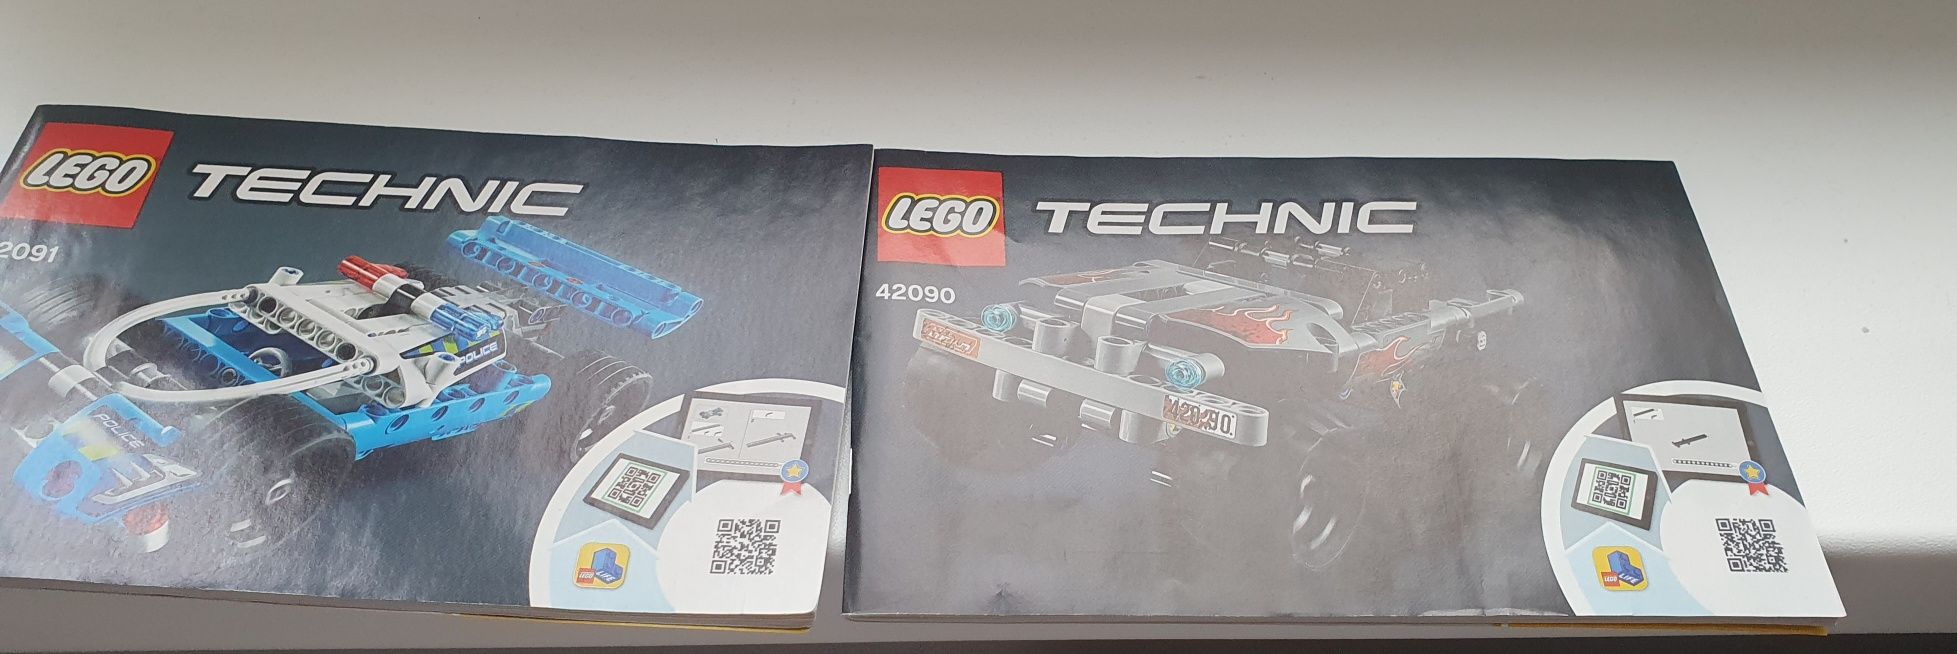 Lego tehnic camion de evadare și urmărirea politiei